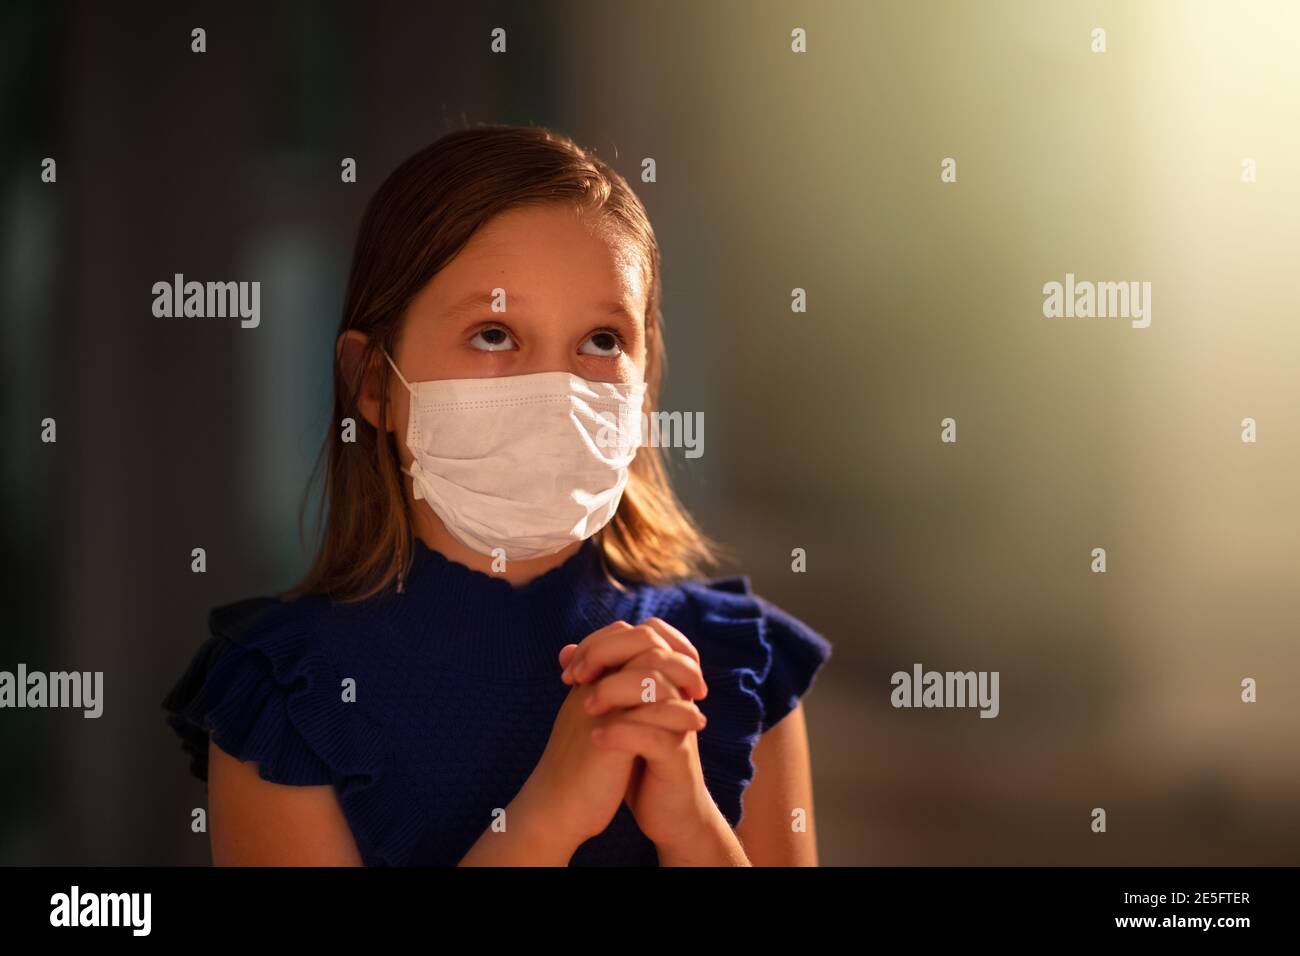 Betet für das Opfer des Coronavirus. Kind im Gesicht Maske beten für krank. Patient in Krankenhauskapelle oder Kirche während Covid-19 Ausbruch. Viruspandemie. Peopl Stockfoto